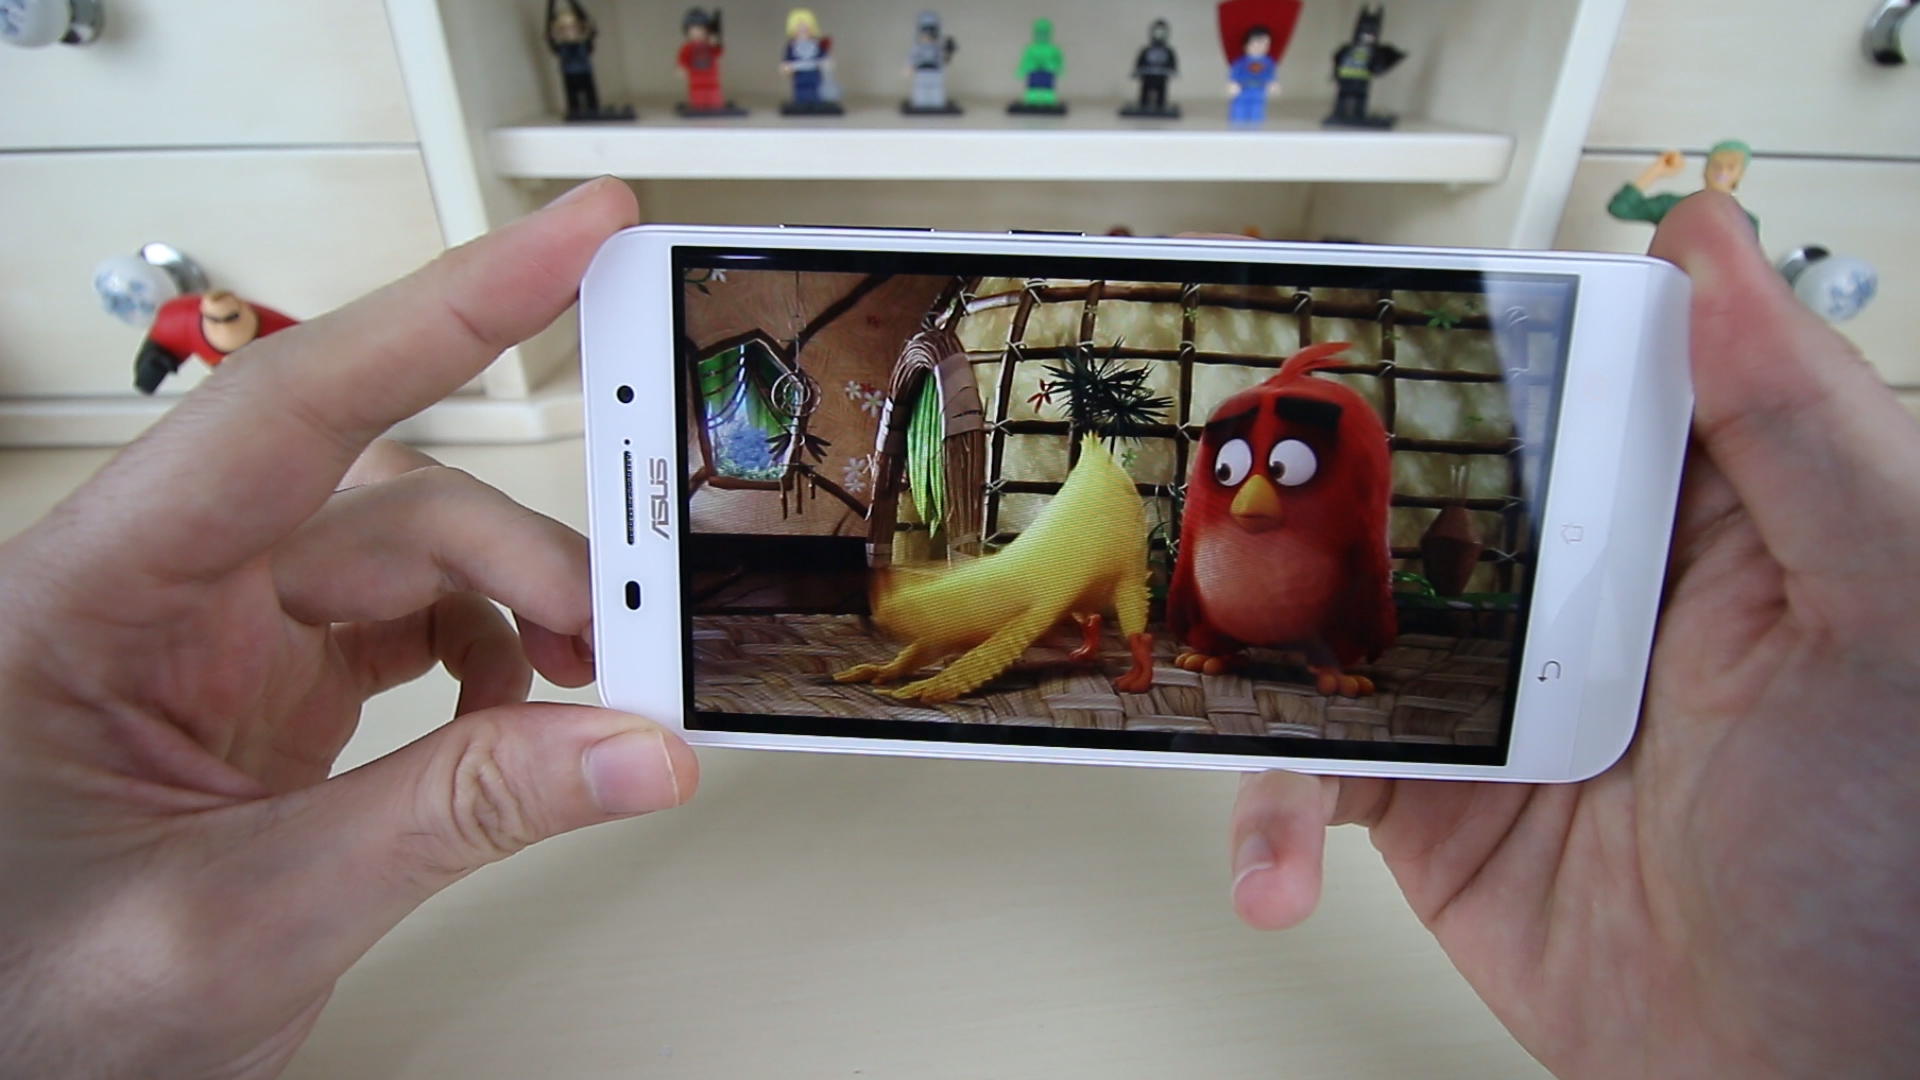 Asus ZenFone Max inceleme videosu 'Pili bitmeyen telefon'